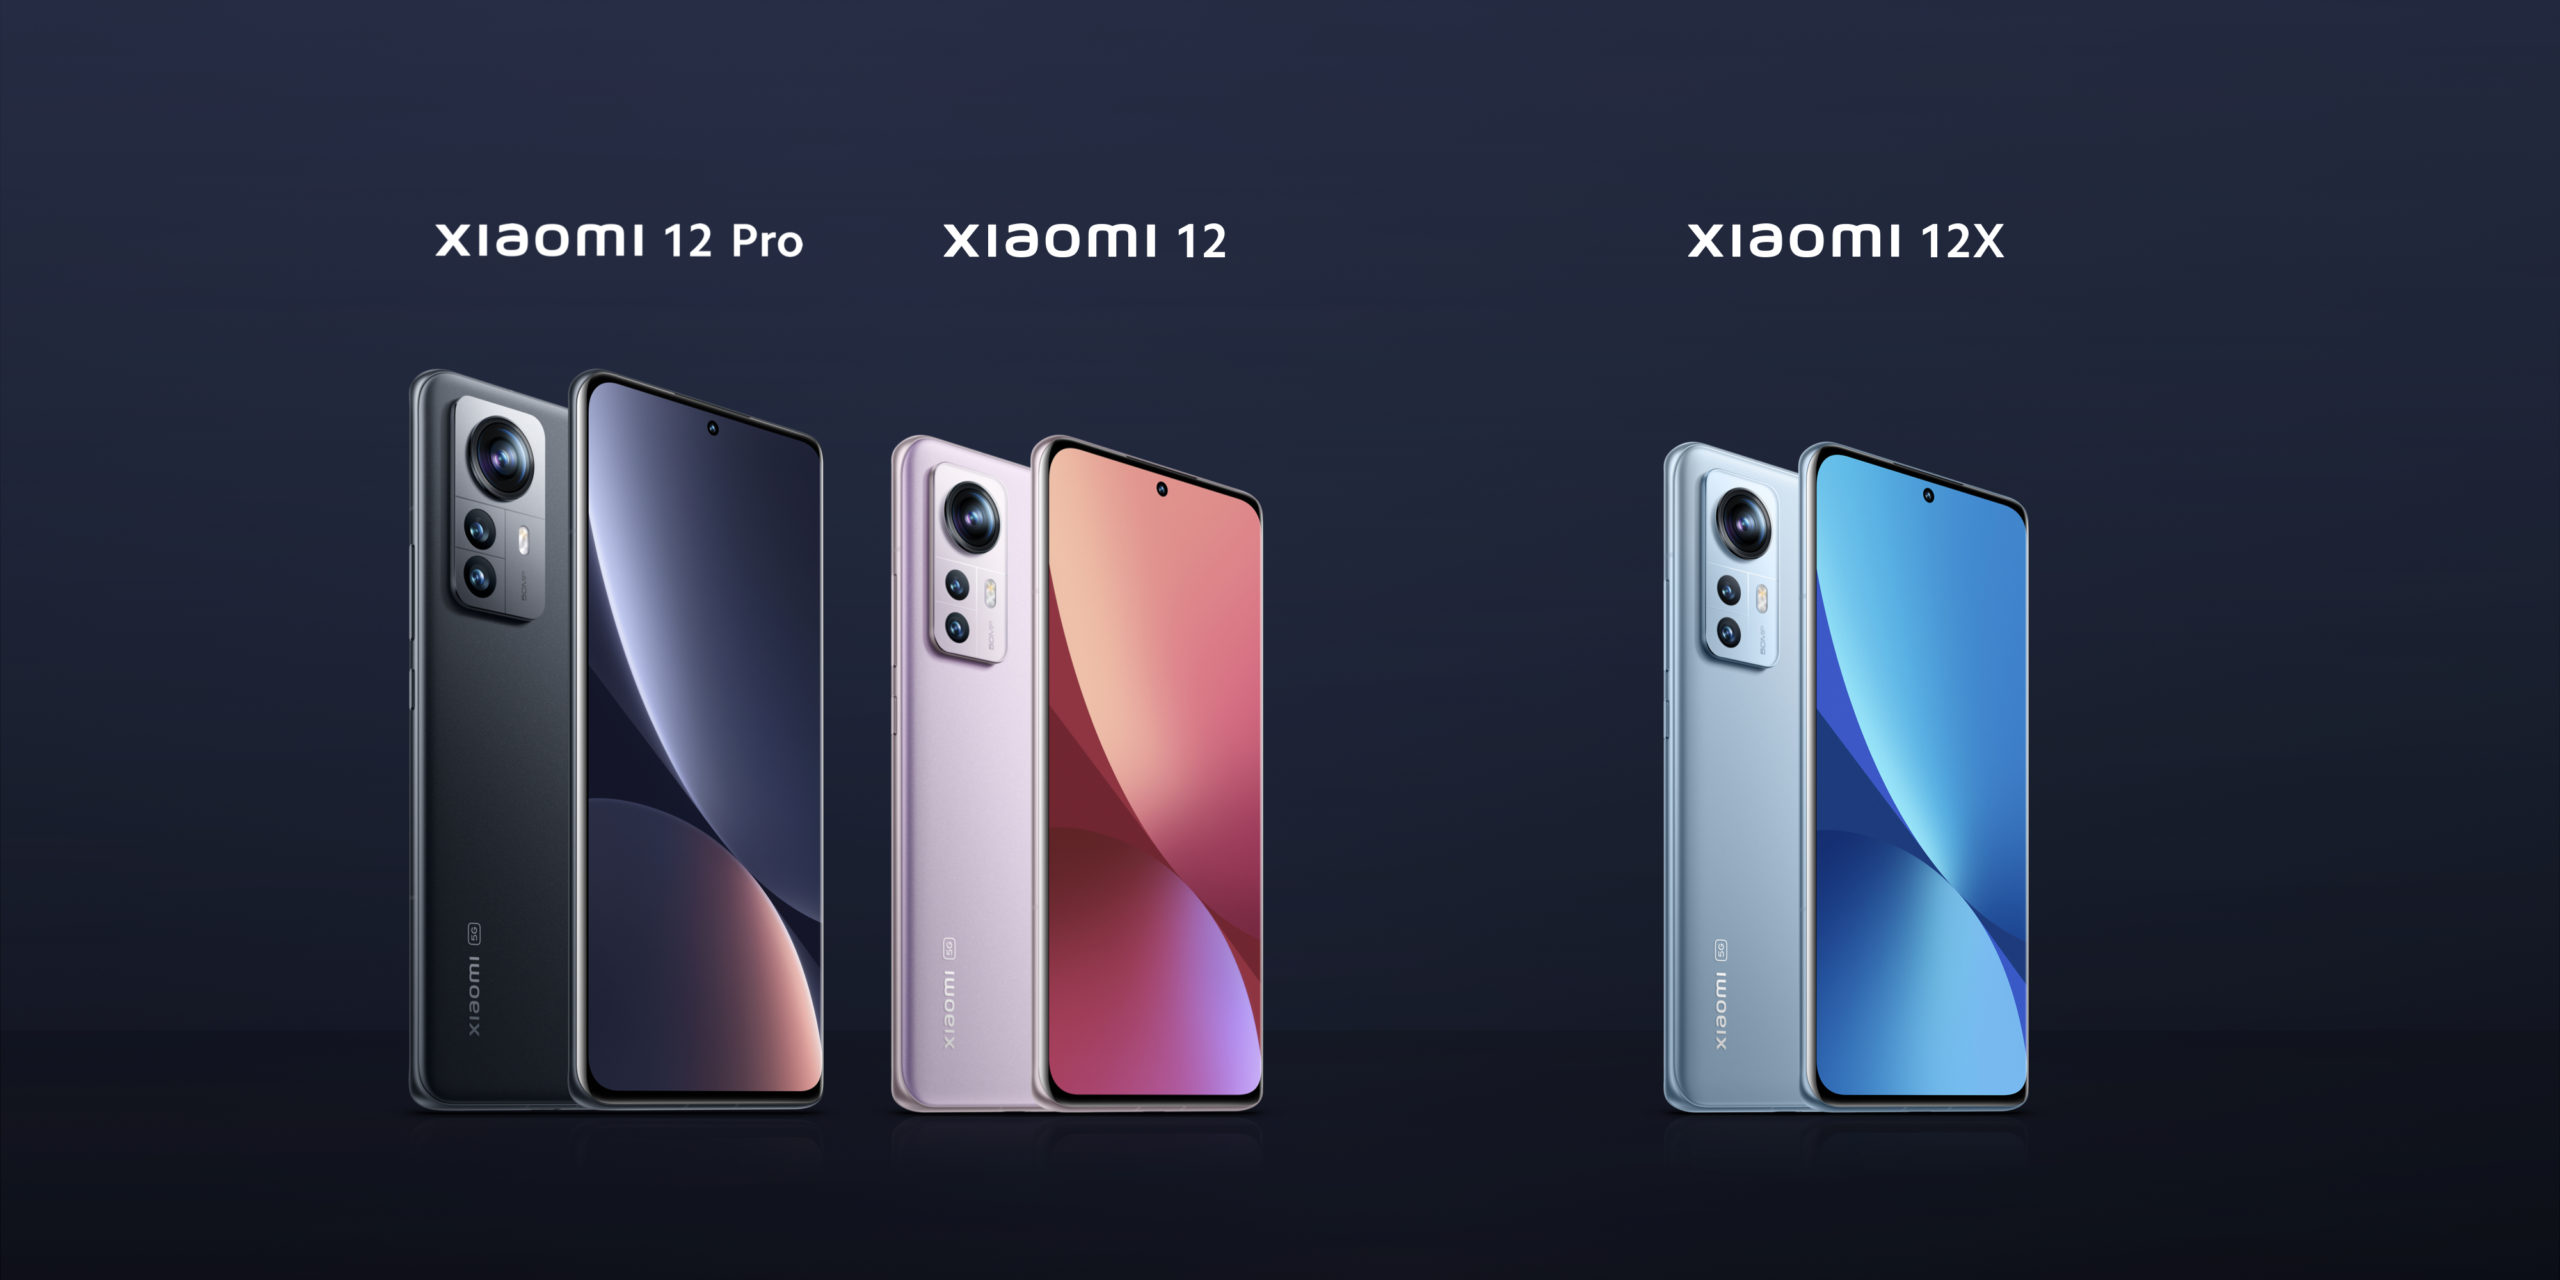 スナドラ8 Gen1搭載「Xiaomi12 Pro」,「Xiaomi12」,スナドラ870搭載「Xiaomi12X」3製品が同時発表&発売へ～いきなりアーリーバード価格で100ドルオフクーポンも